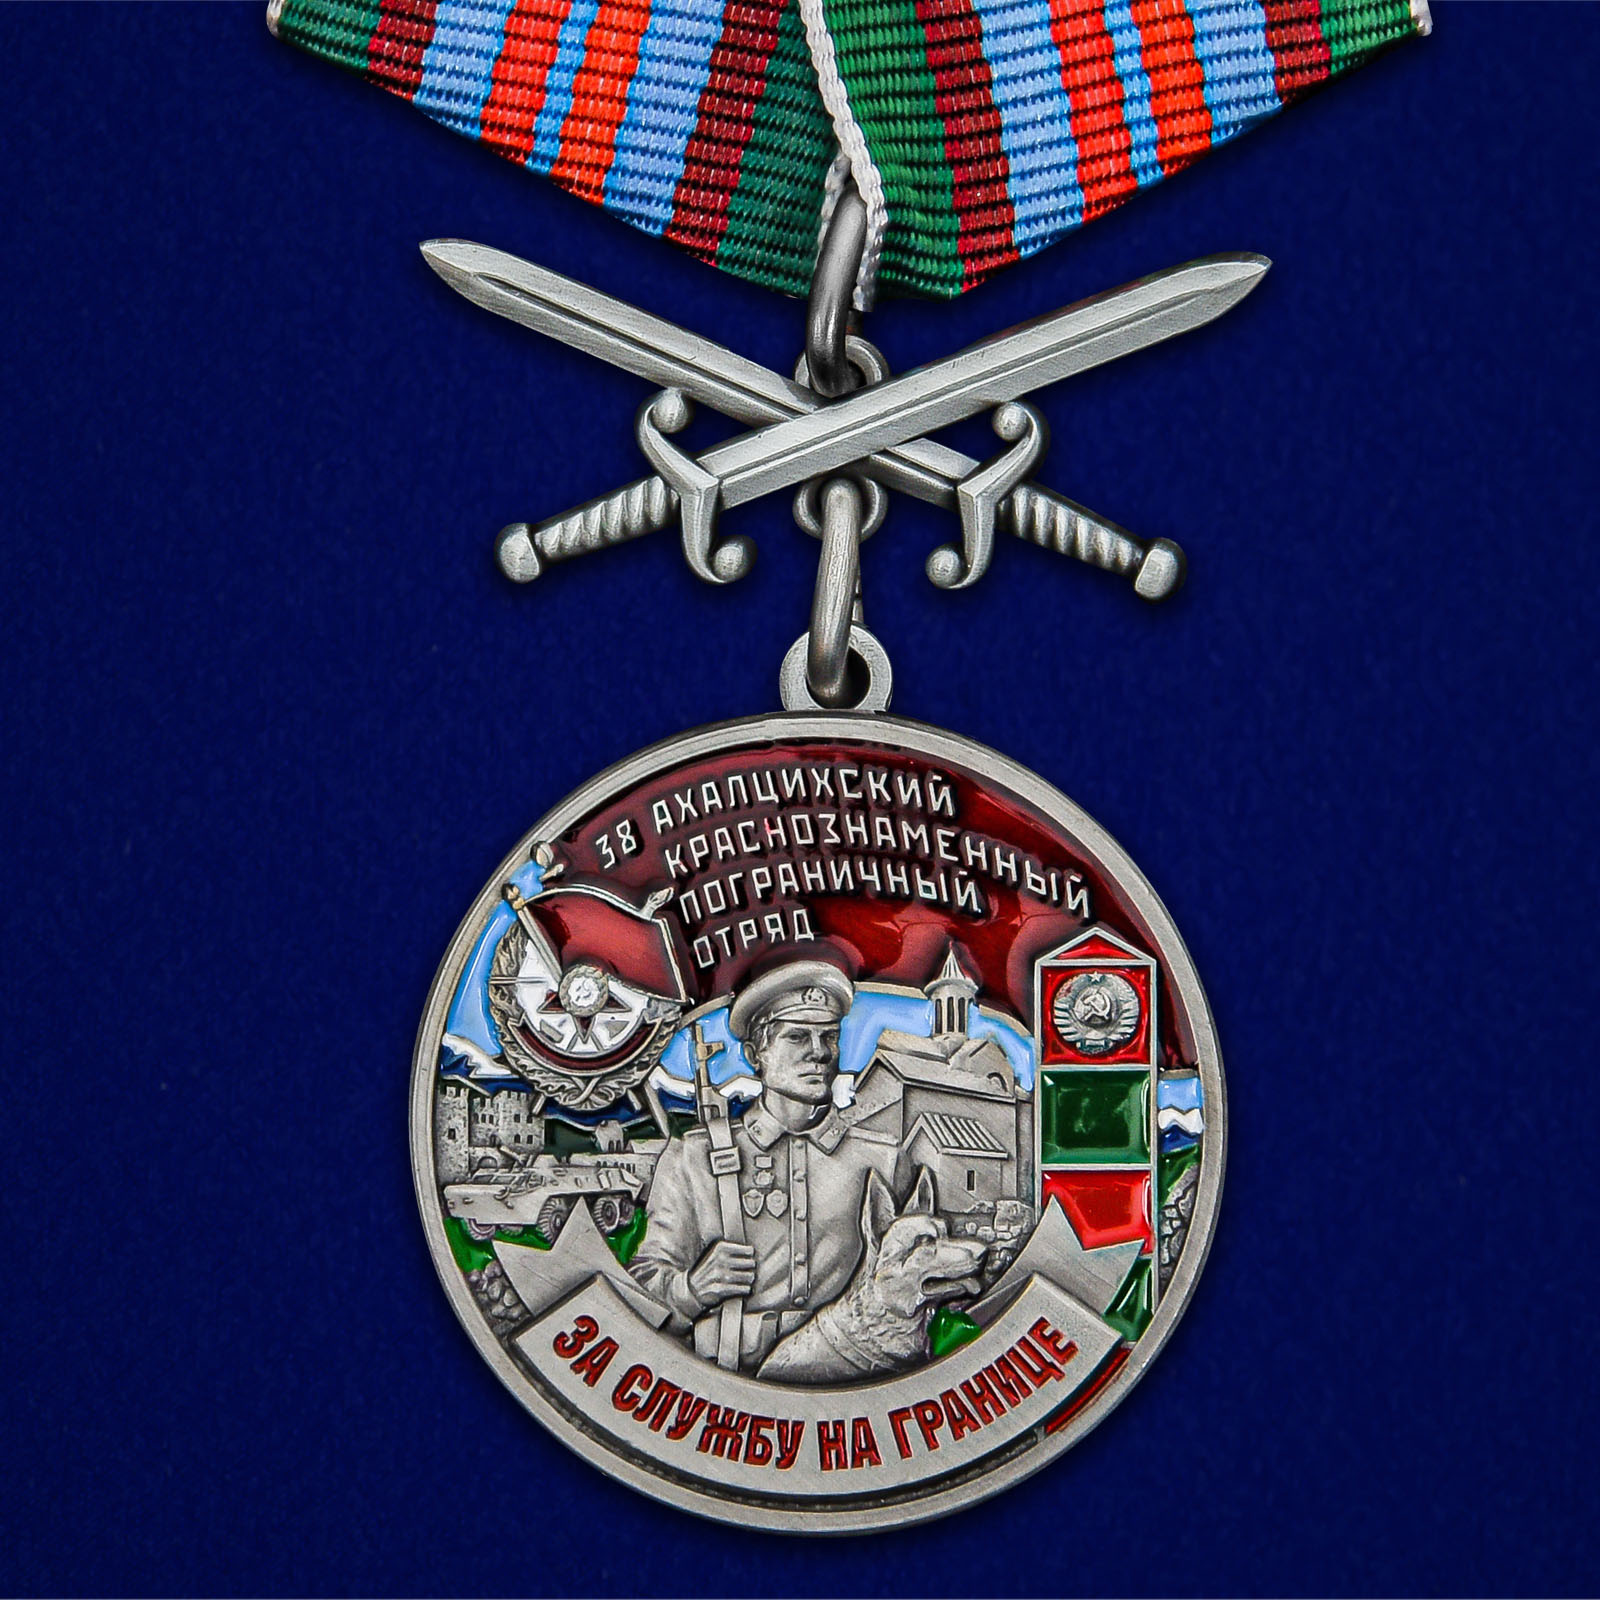 Купить медаль За службу в Ахалцихском пограничном отряде онлайн